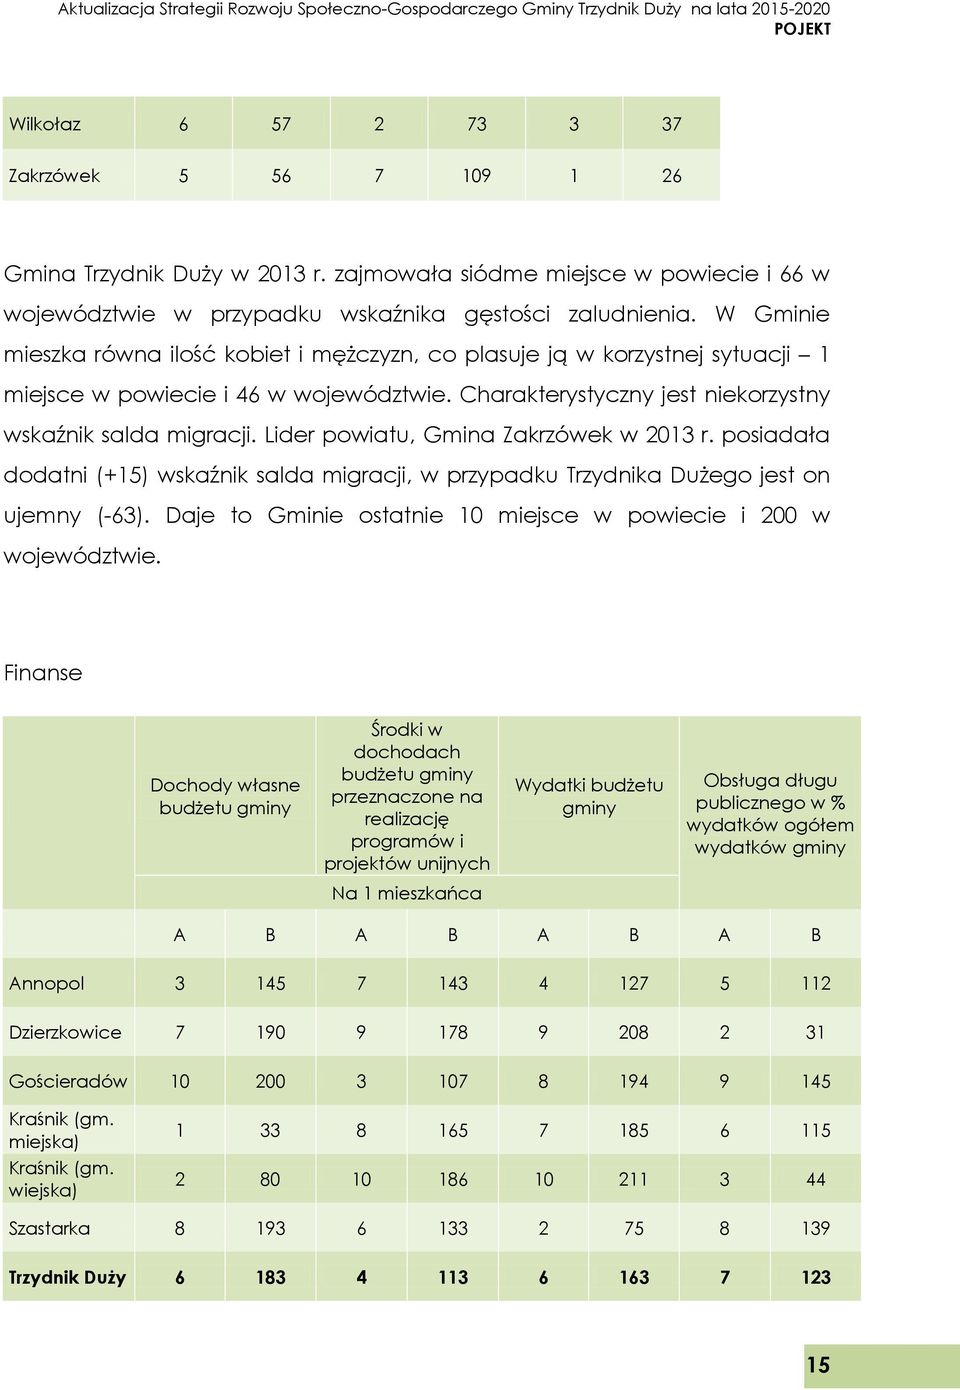 Lider powiatu, Gmina Zakrzówek w 2013 r. posiadała dodatni (+15) wskaźnik salda migracji, w przypadku Trzydnika Dużego jest on ujemny (-63).